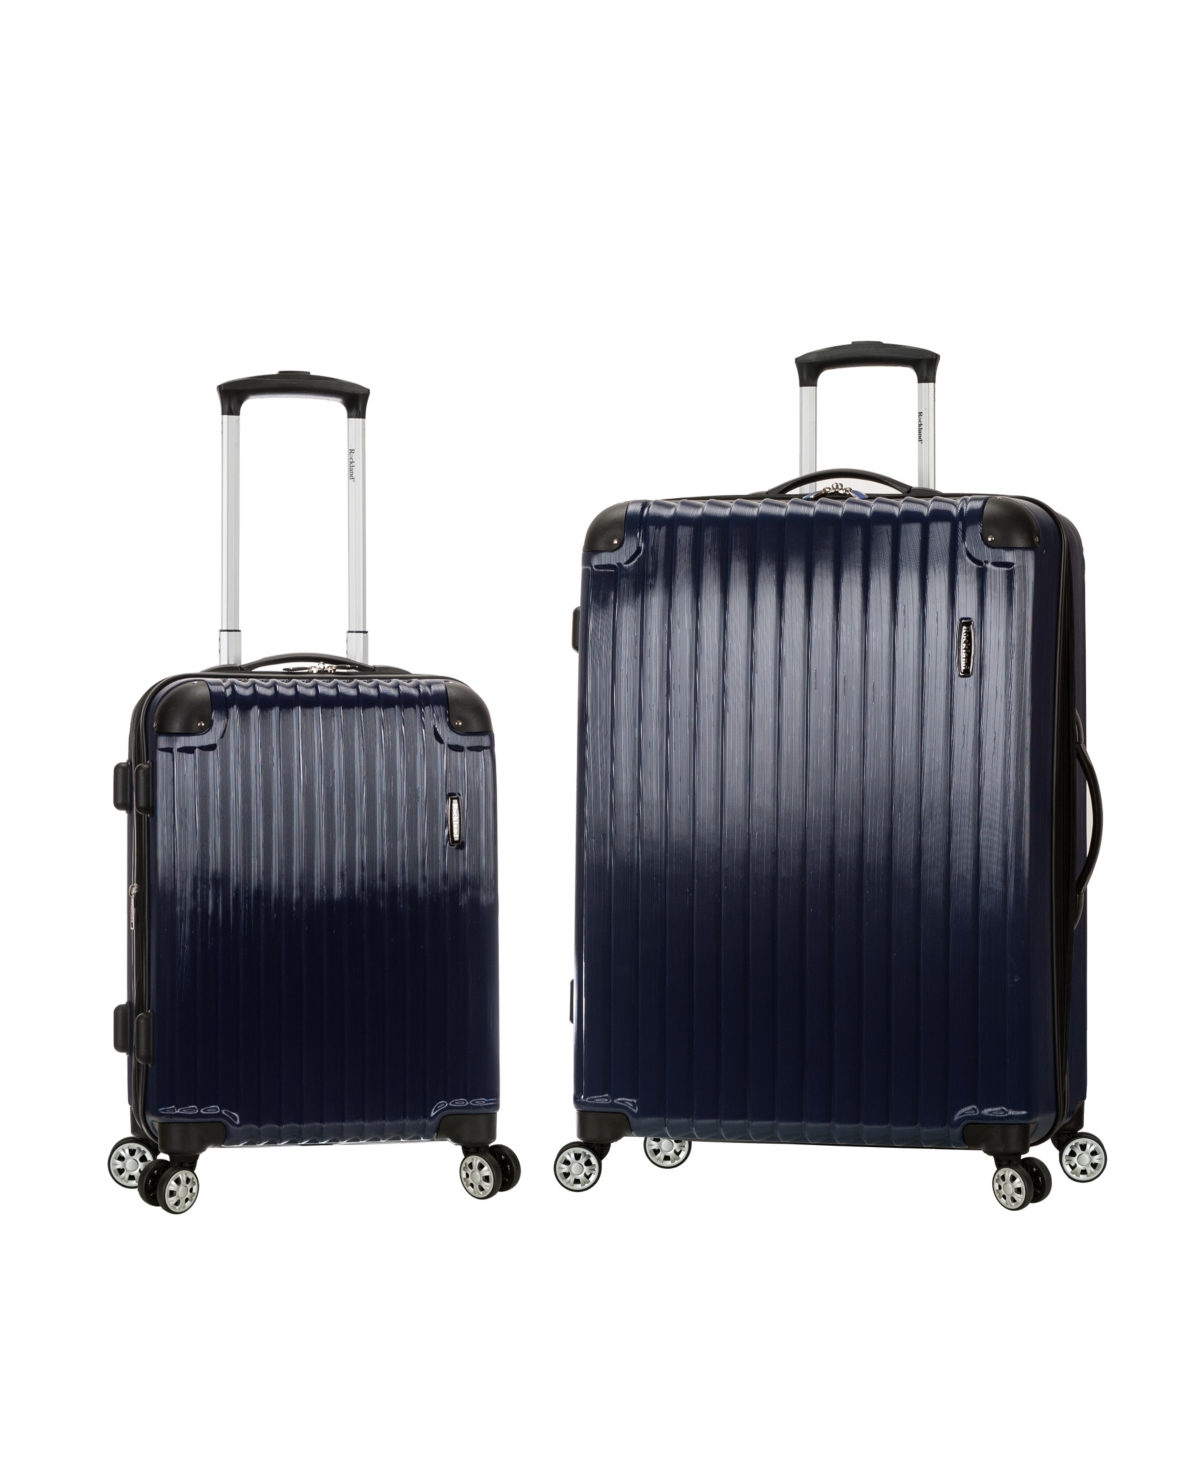 Santorini 2-Pc. Hardside Luggage Set - Grey